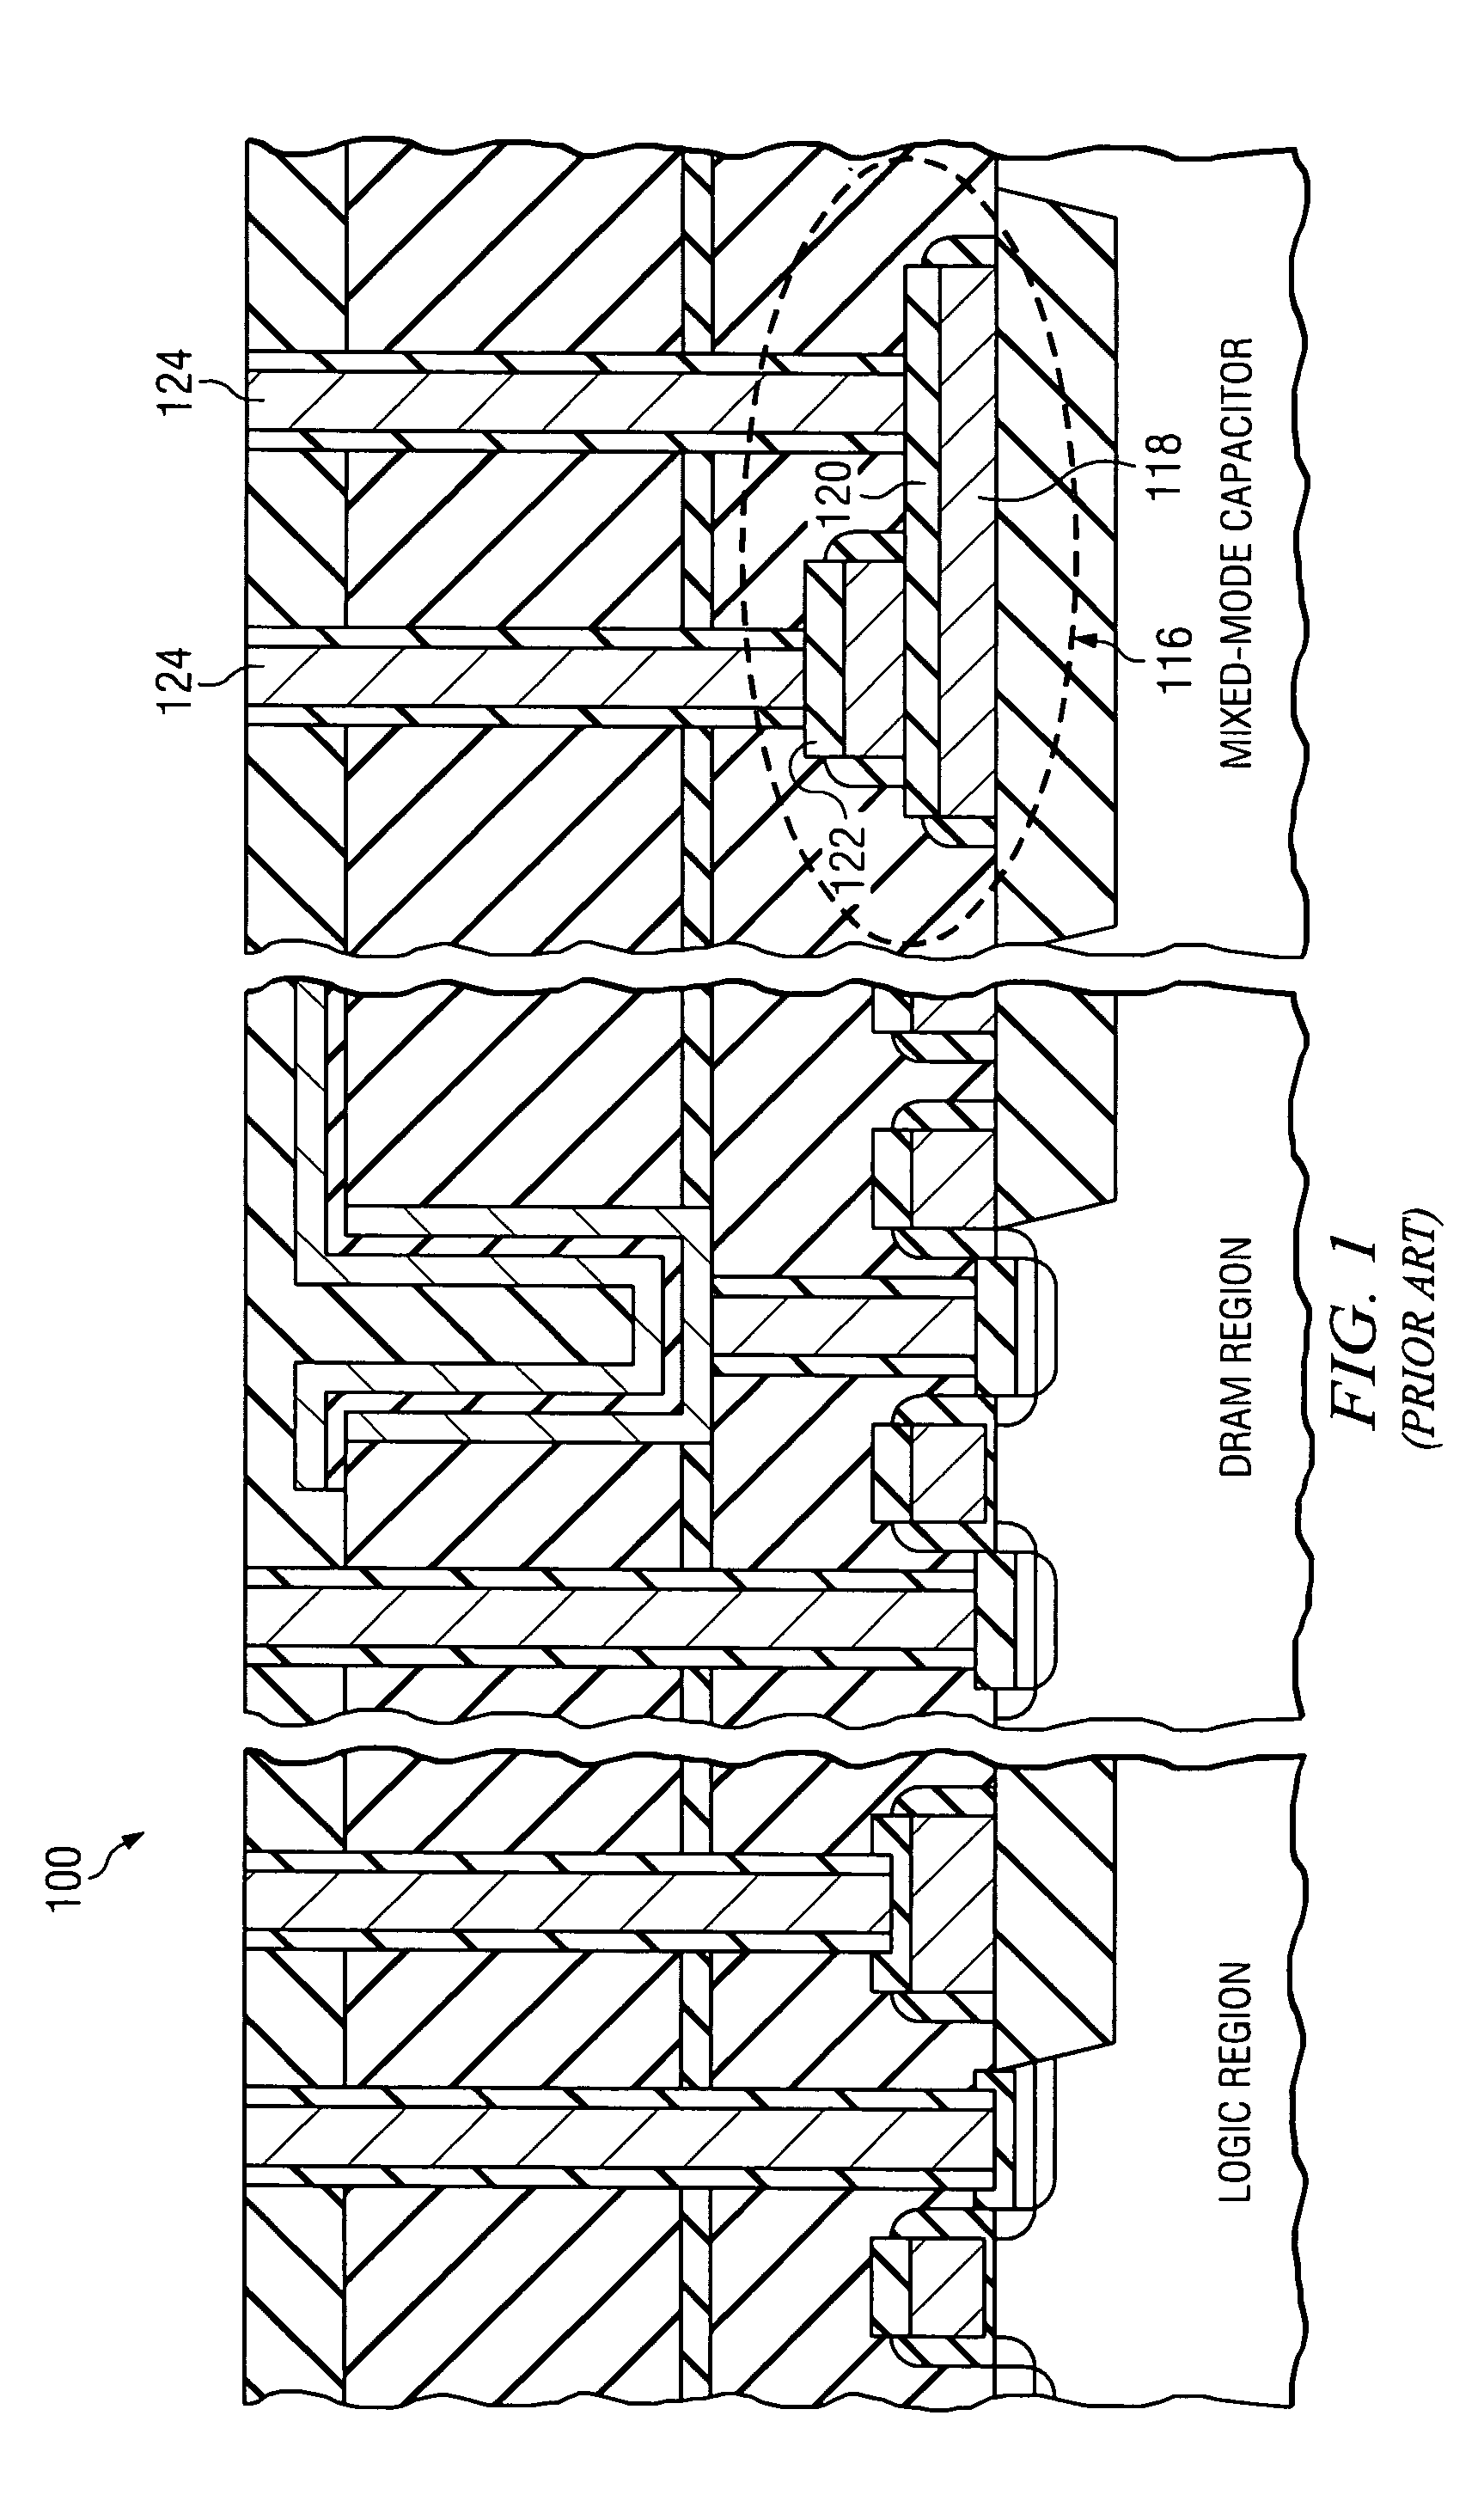 Metal-insulator-metal capacitors